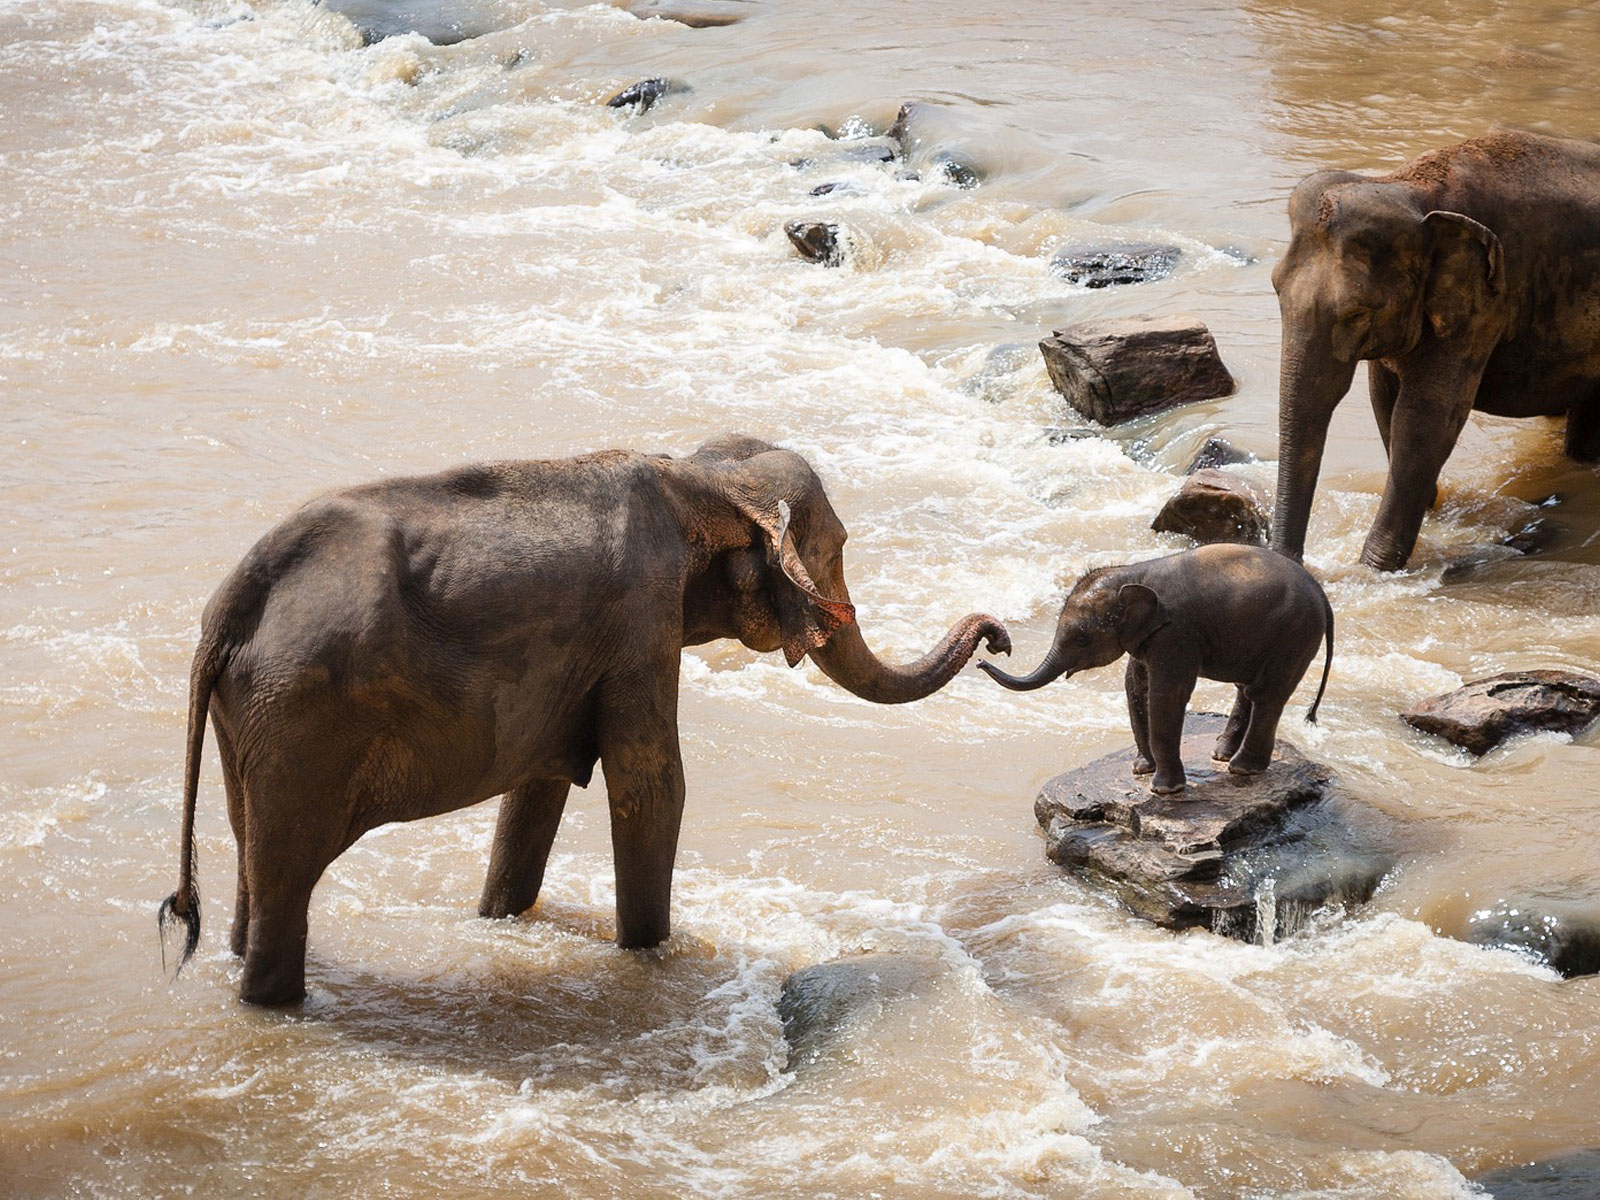 Le formidable pouvoir d'apprentissage chez les éléphants